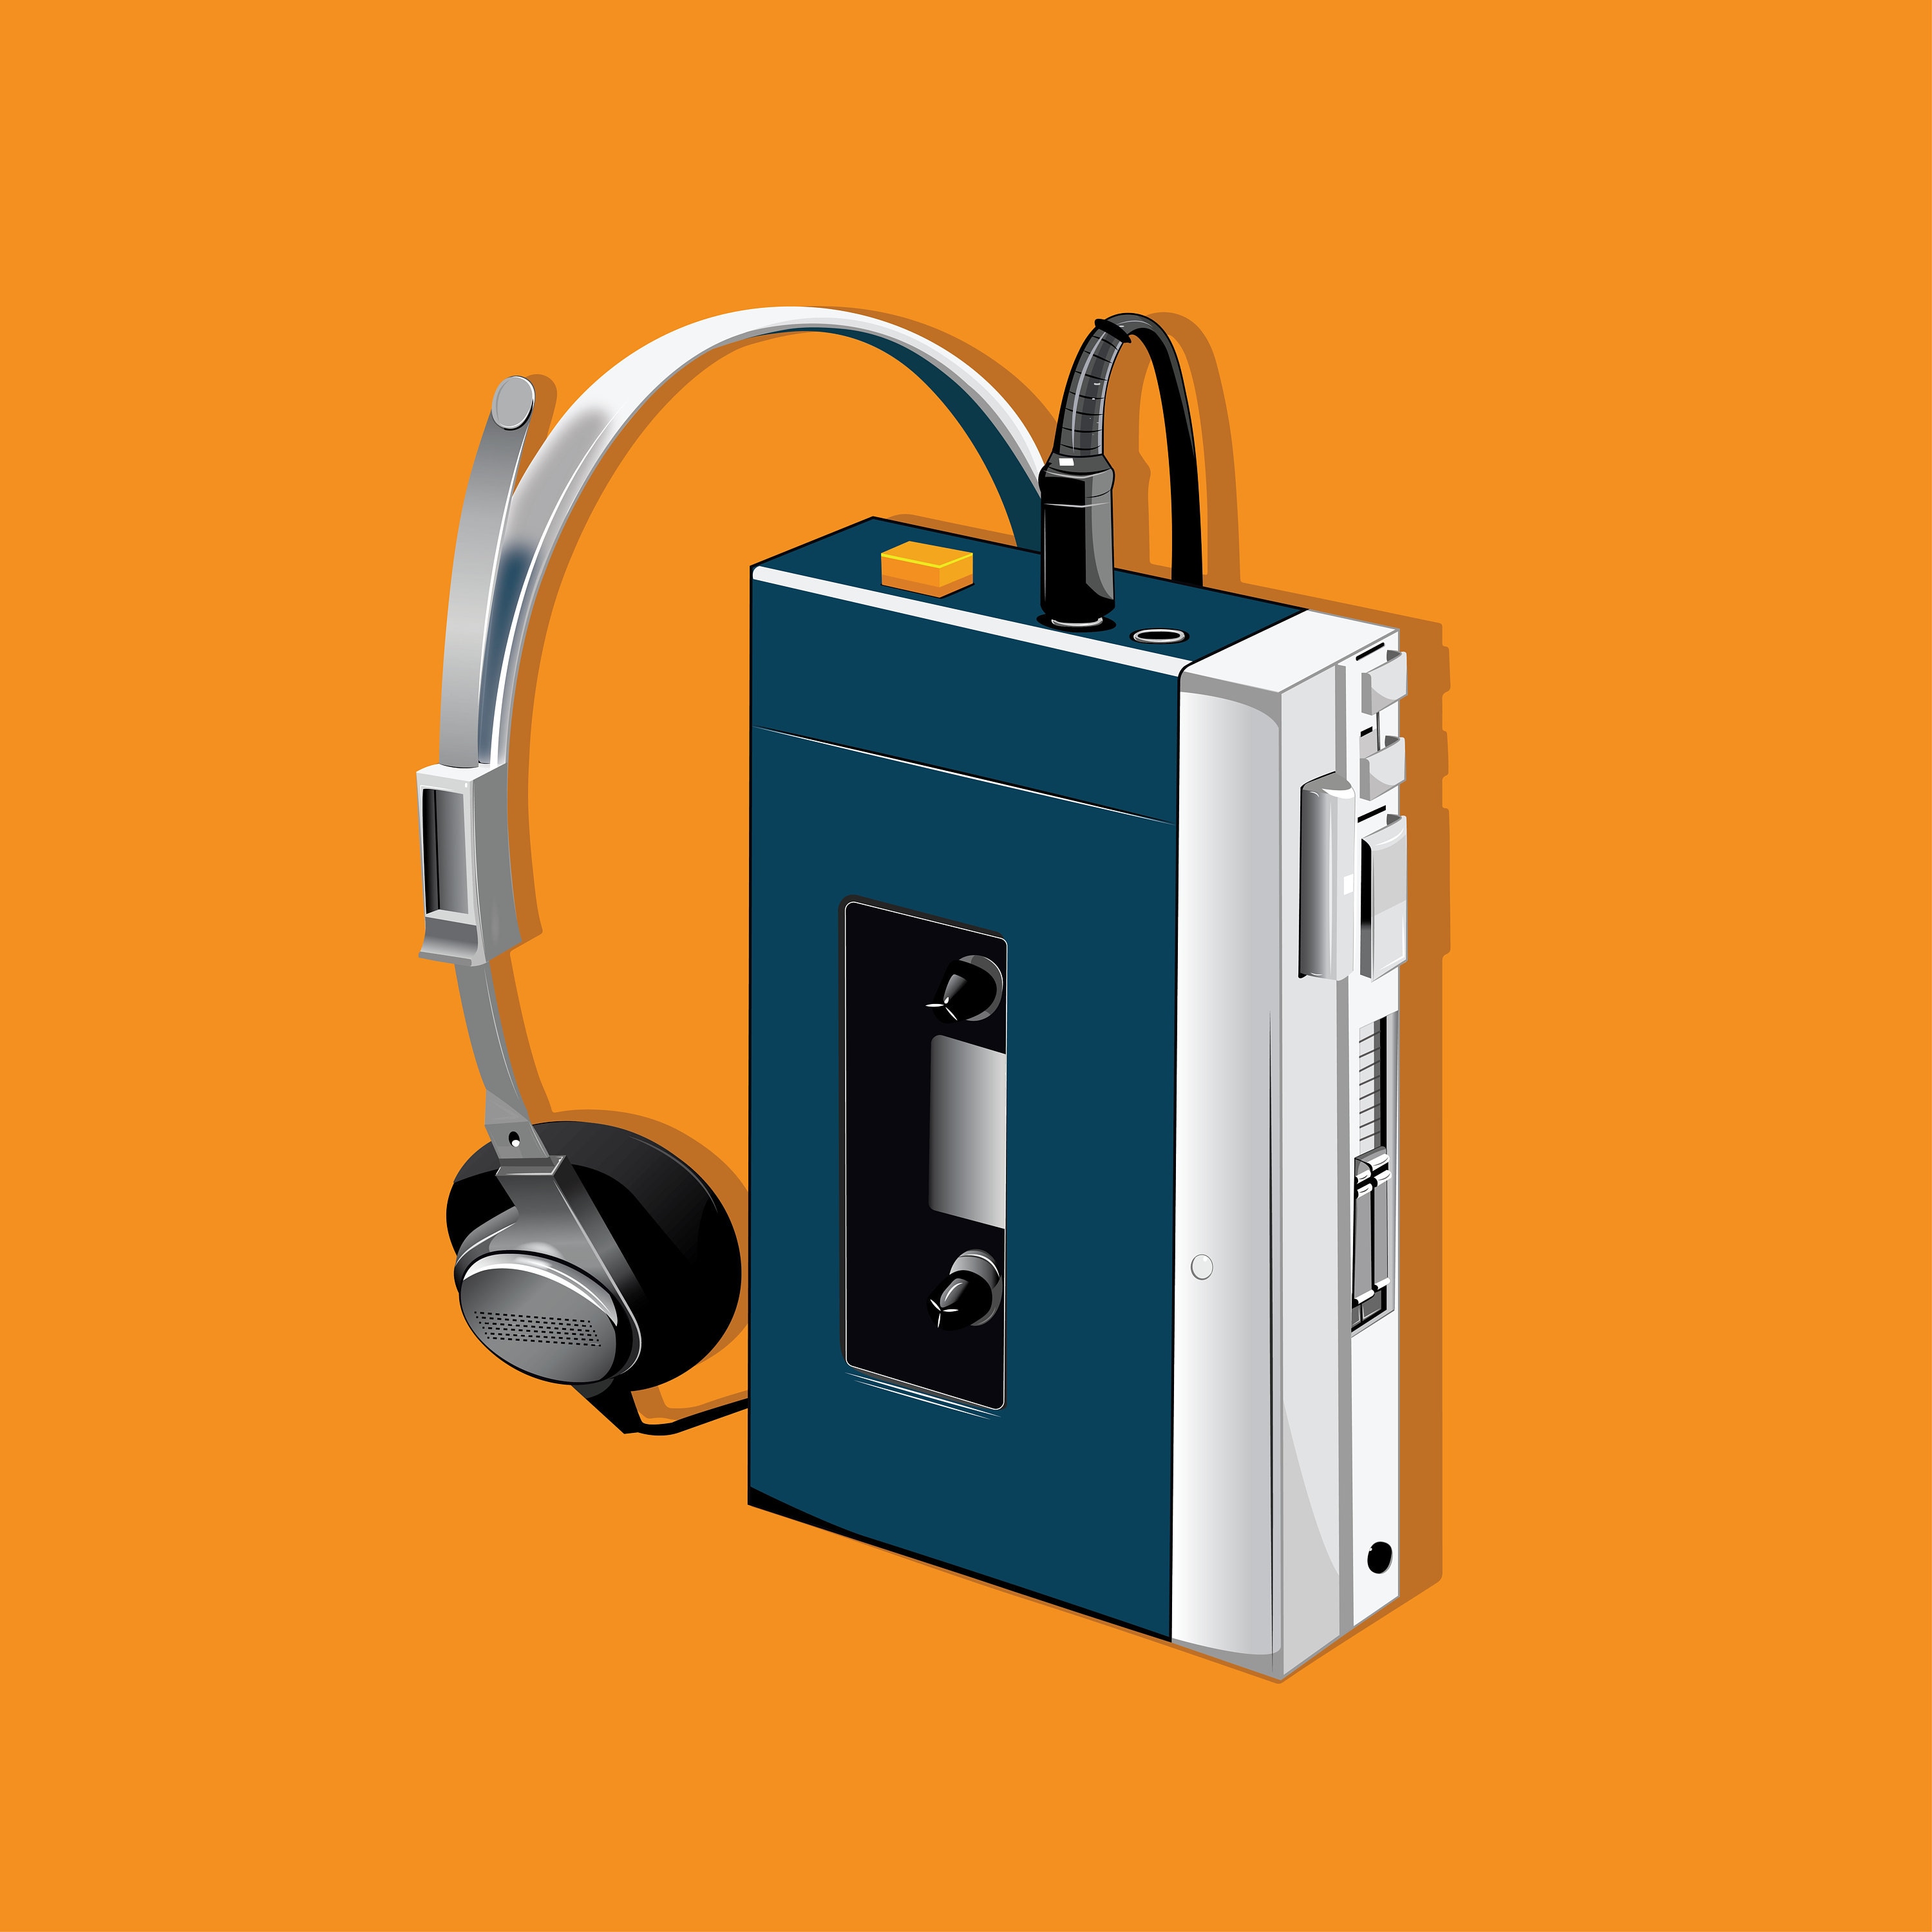 Sony Walkman Cassette Player 